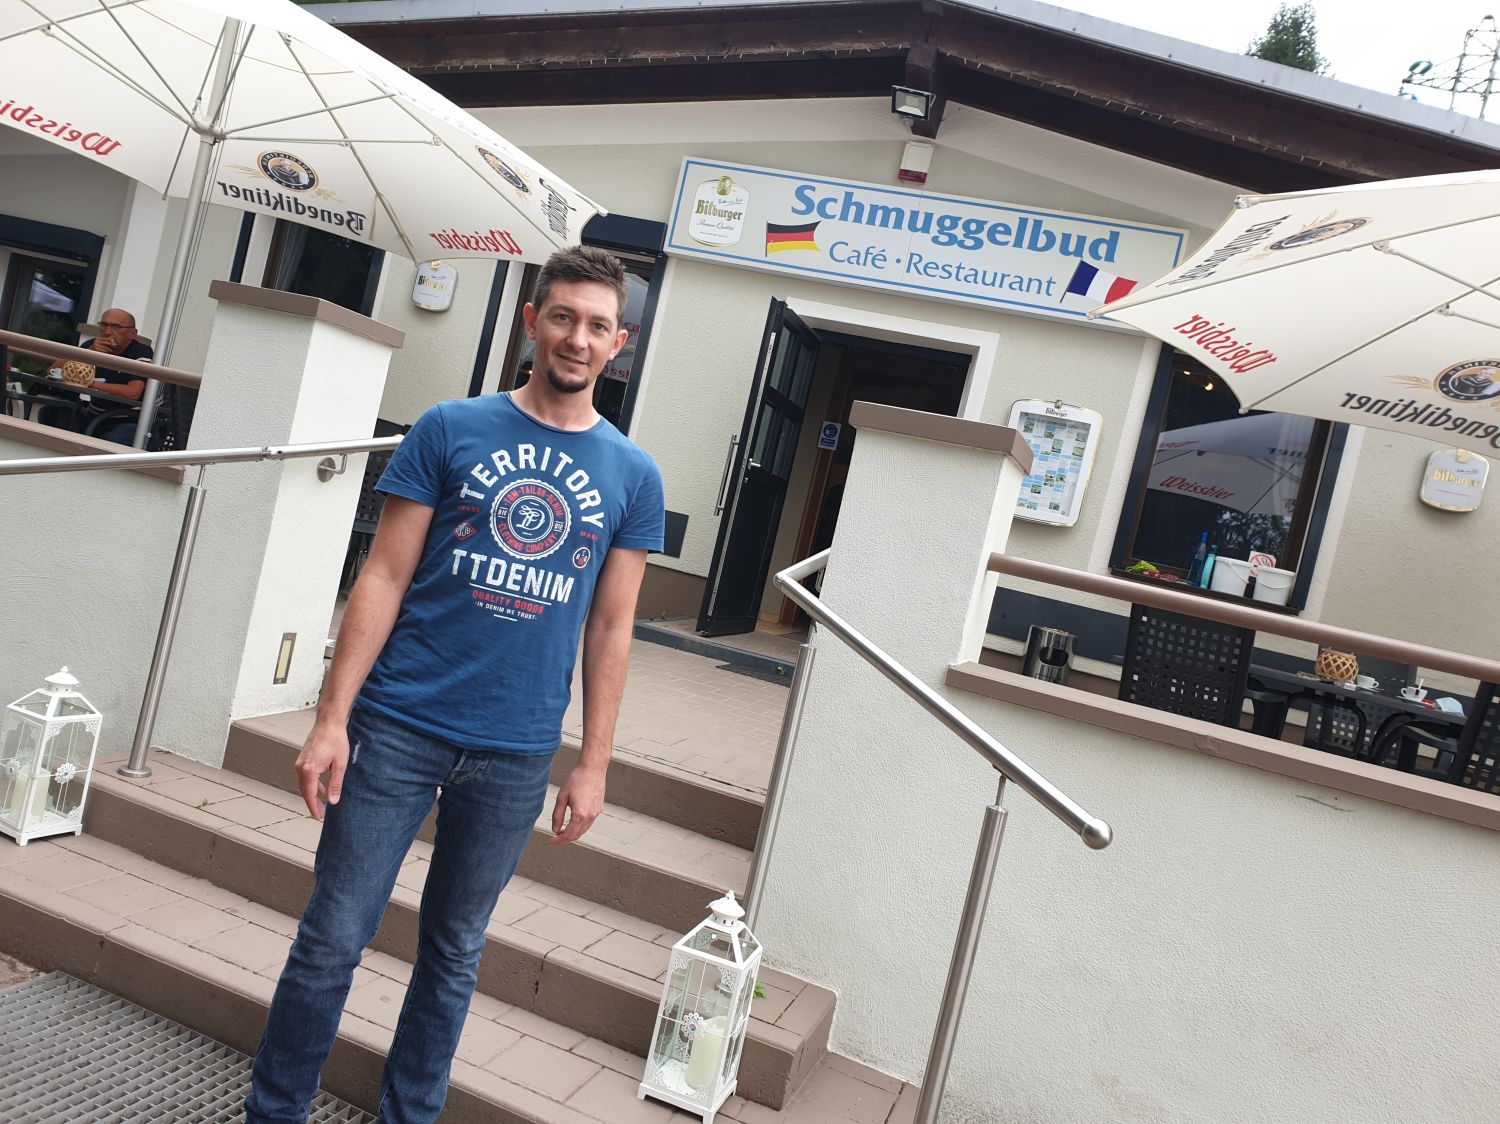 La Schmuggelbud : un restaurant ''en France, mais quand même en Allemagne''